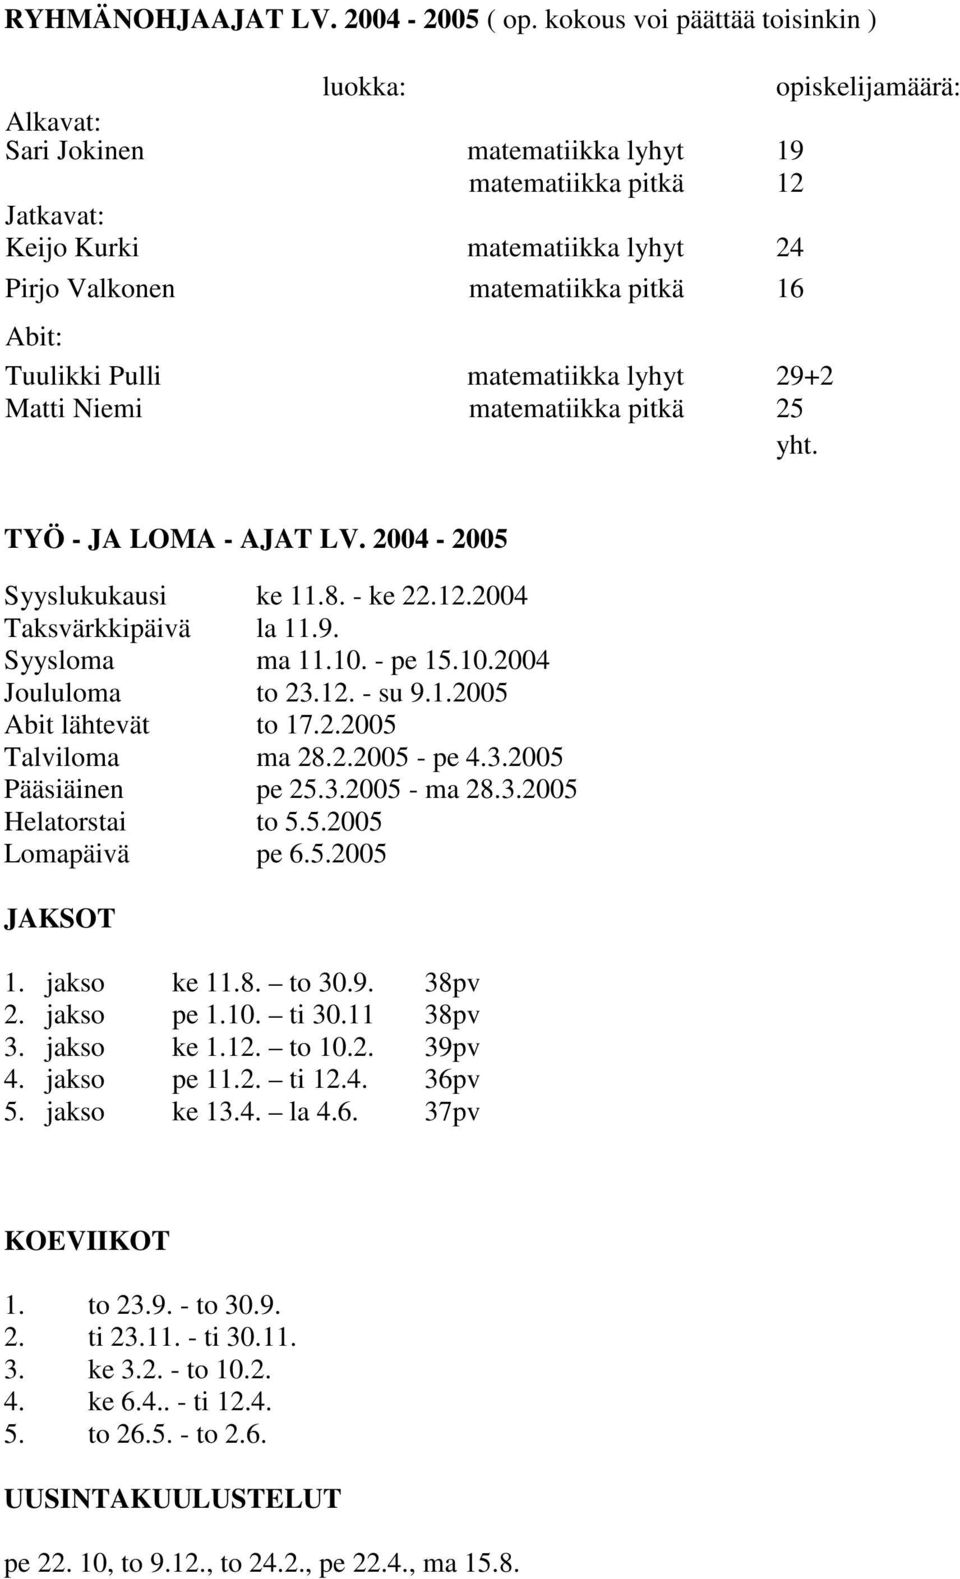 16 Abit: Tuulikki Pulli matematiikka lyhyt 29+2 Matti Niemi matematiikka pitkä 25 yht. TYÖ - JA LOMA - AJAT LV. 2004-2005 Syyslukukausi ke 11.8. - ke 22.12.2004 Taksvärkkipäivä la 11.9. Syysloma ma 11.